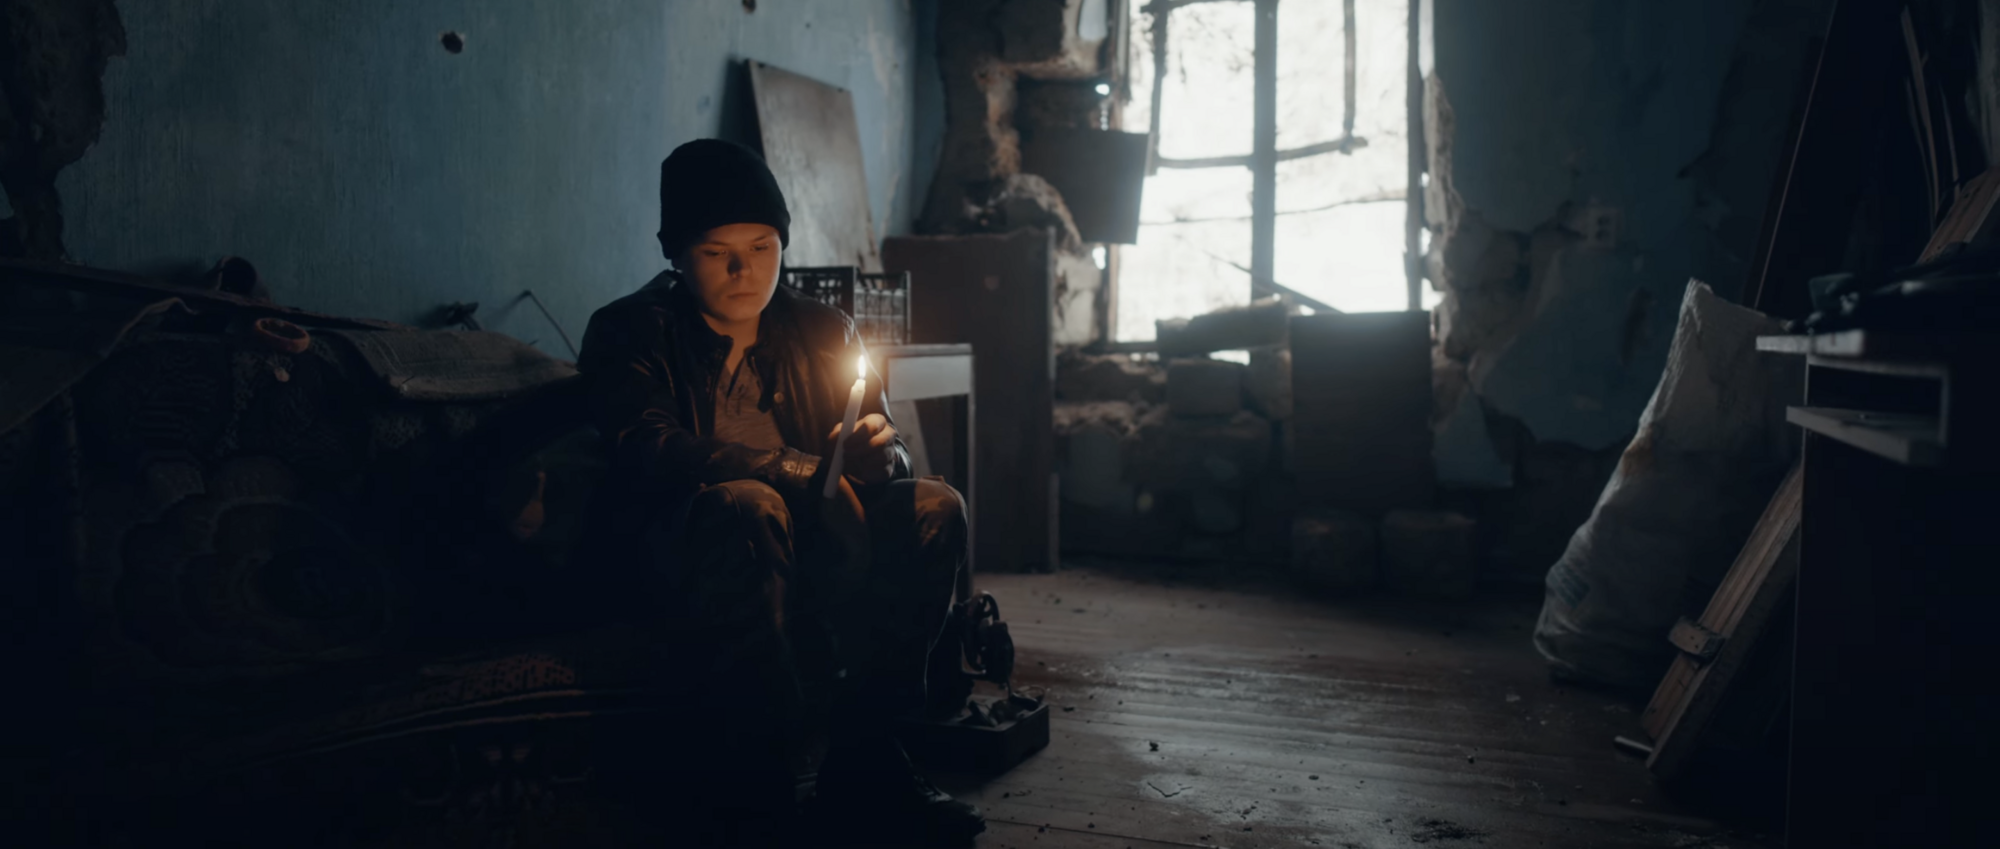 Imagine Dragons зняли кліп у деокупованому українському селі та розповіли історію 14-річного Сашка, який втратив усе